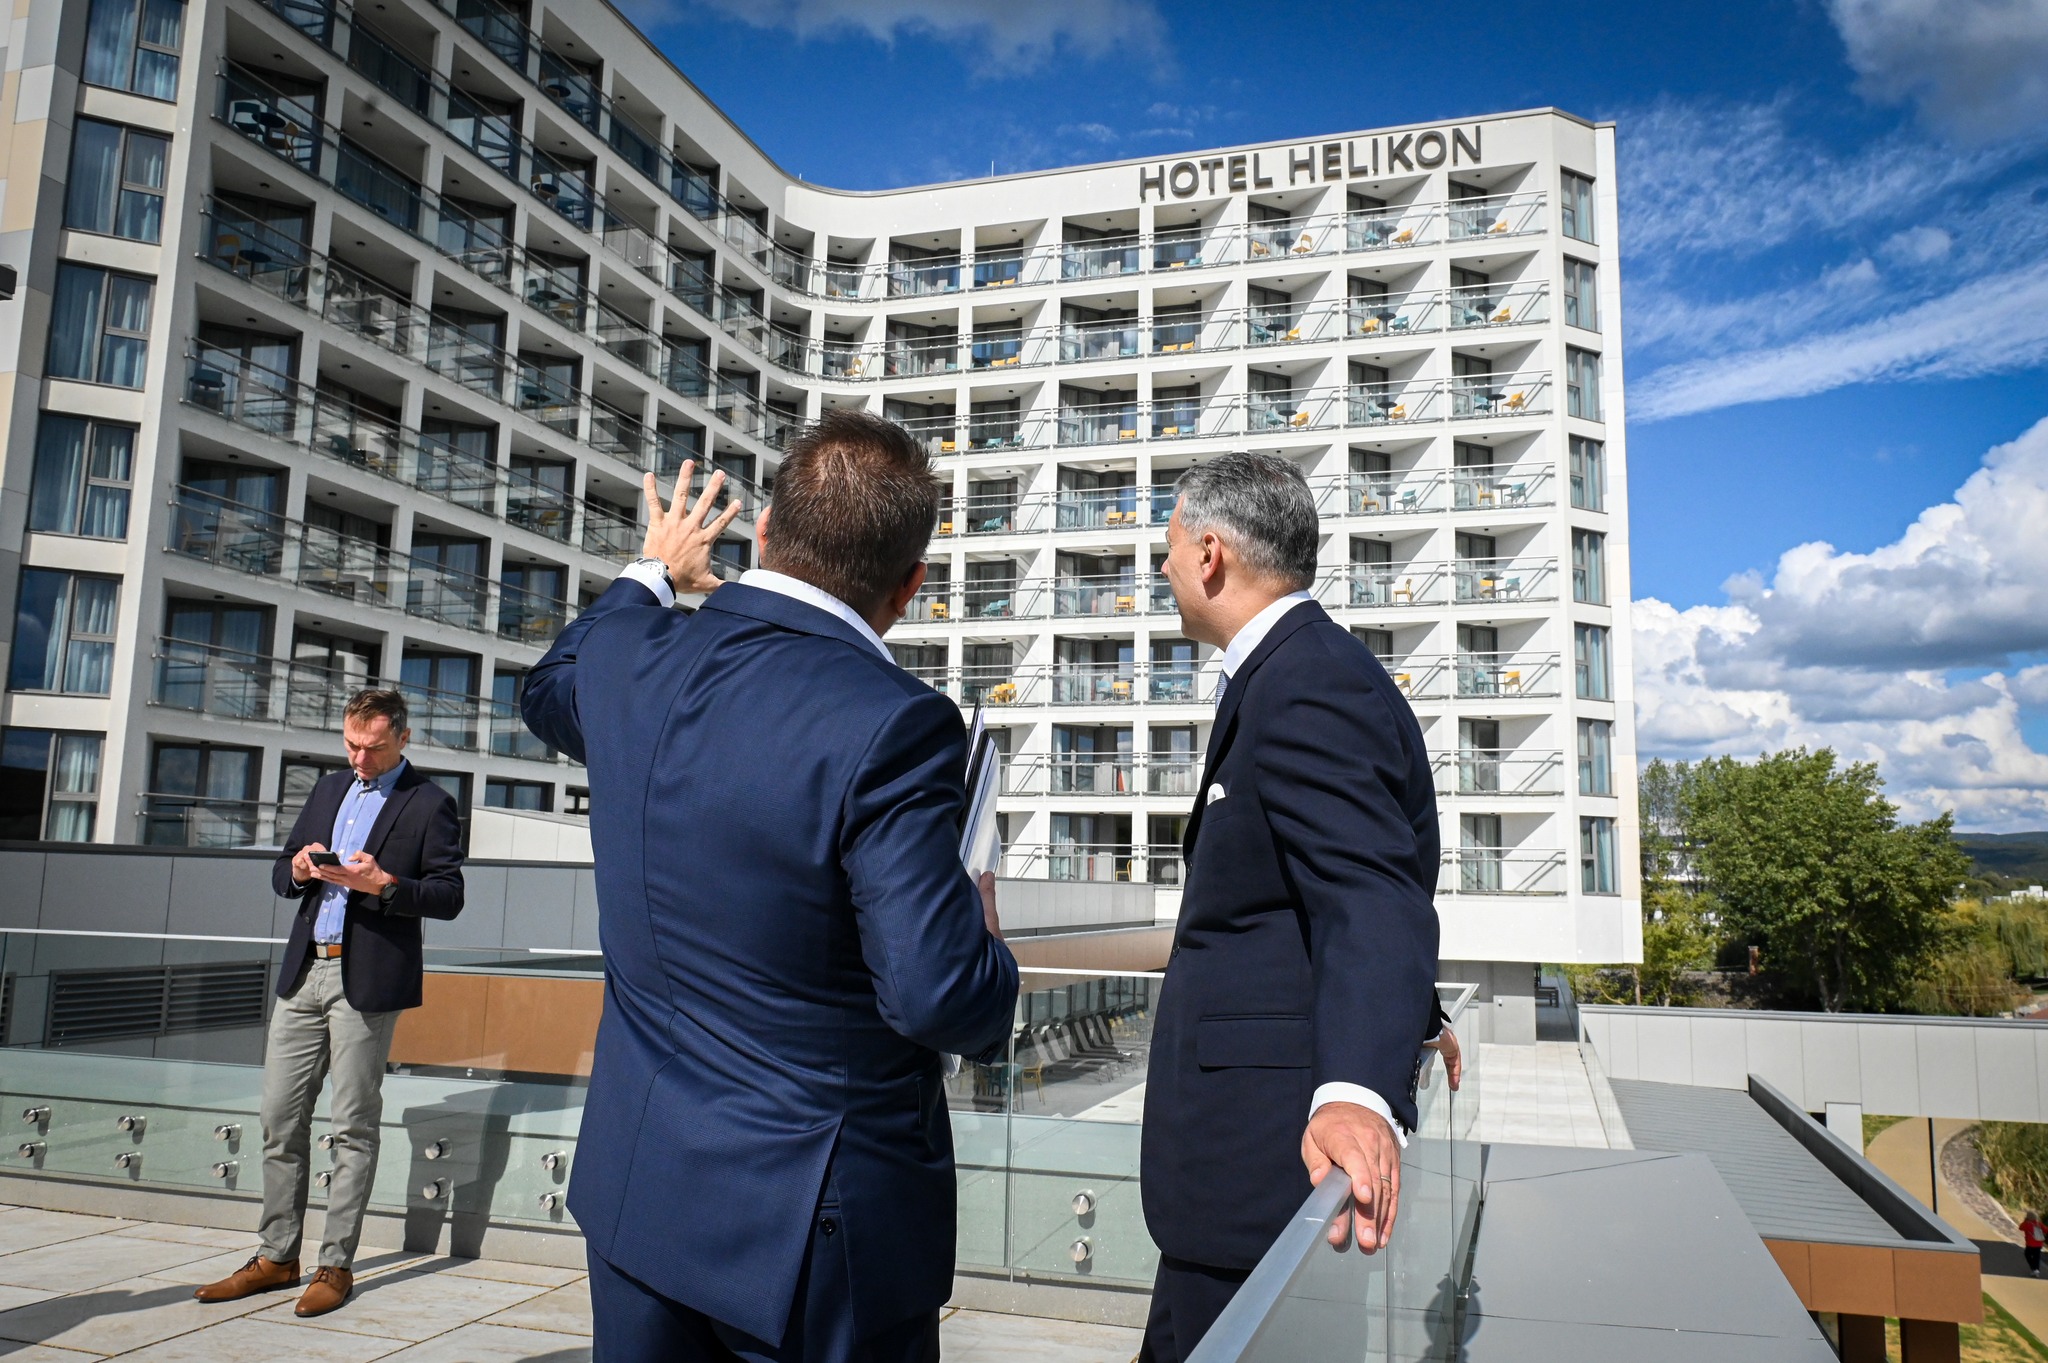 Szalagot vágtak: nagy pillanat Keszthely életében a Helikon Hotel felújítás utáni hivatalos újranyitása